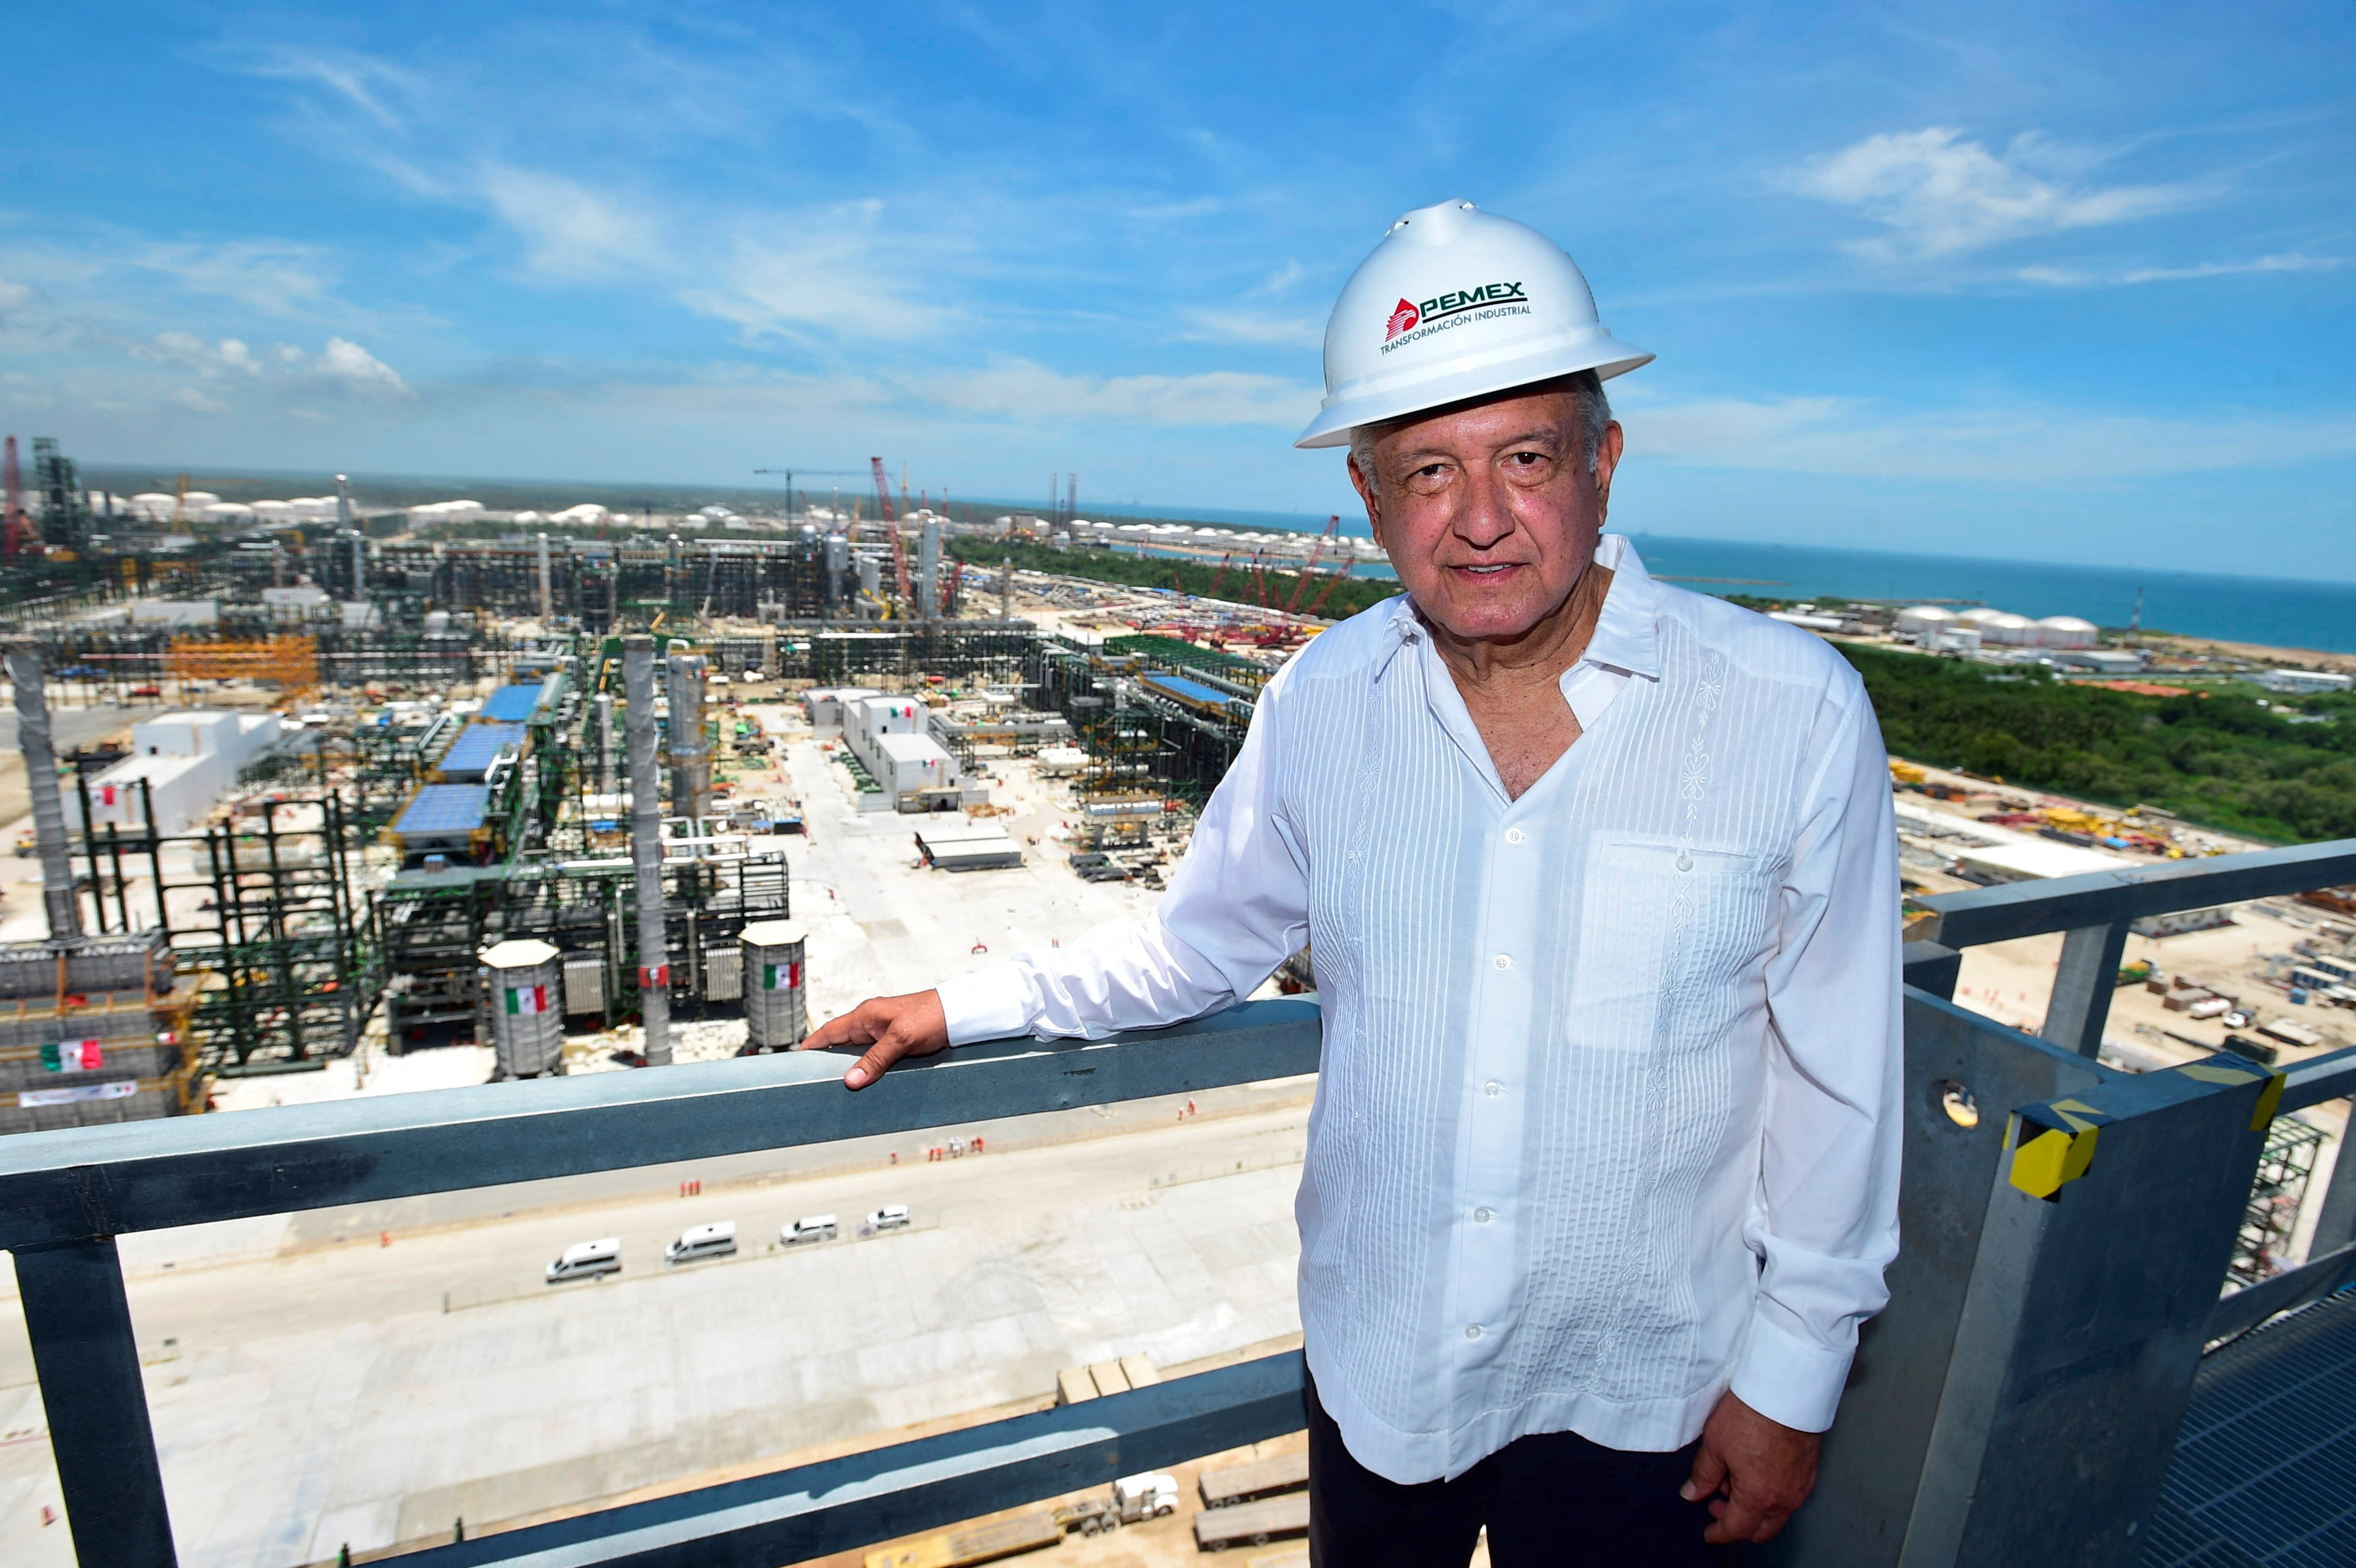 El presidente Andrés Manuel López Obrador aseguró que la refinería es un paso histórico dentro de su gobierno y tras la política neoliberal

Foto: Presidencia de México /Handout via REUTERS